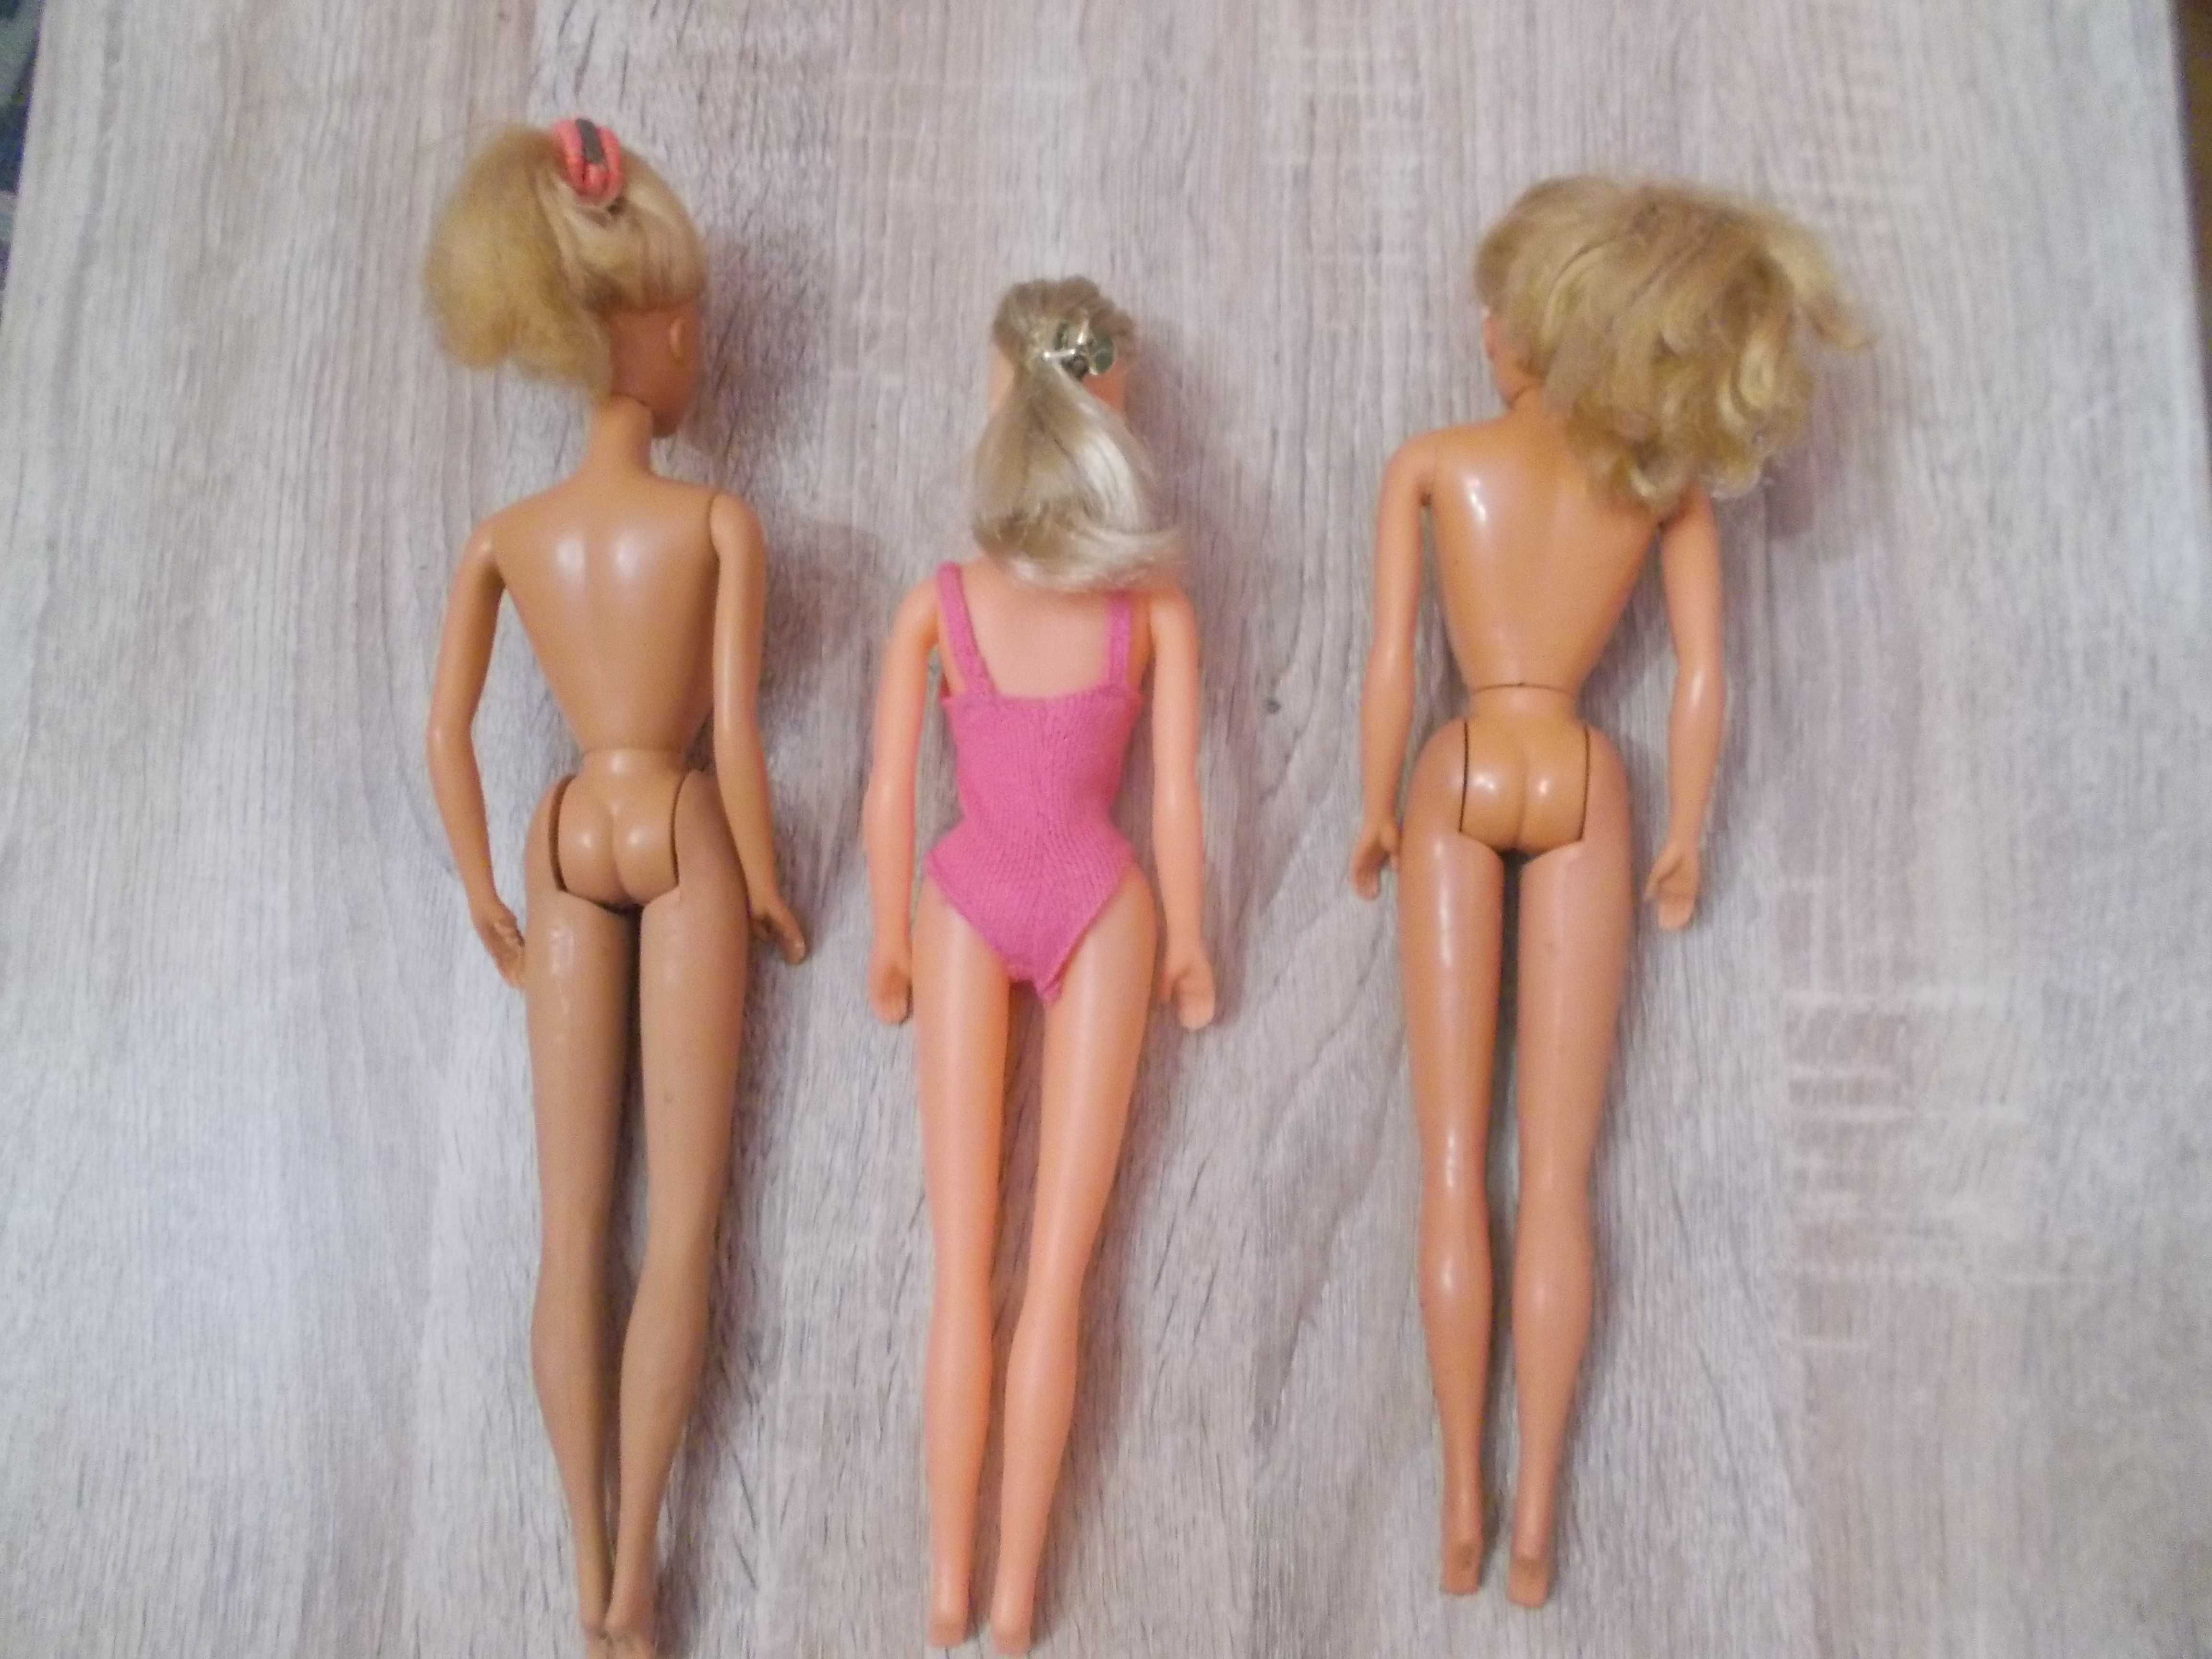 3 bonecas tipo Barbie